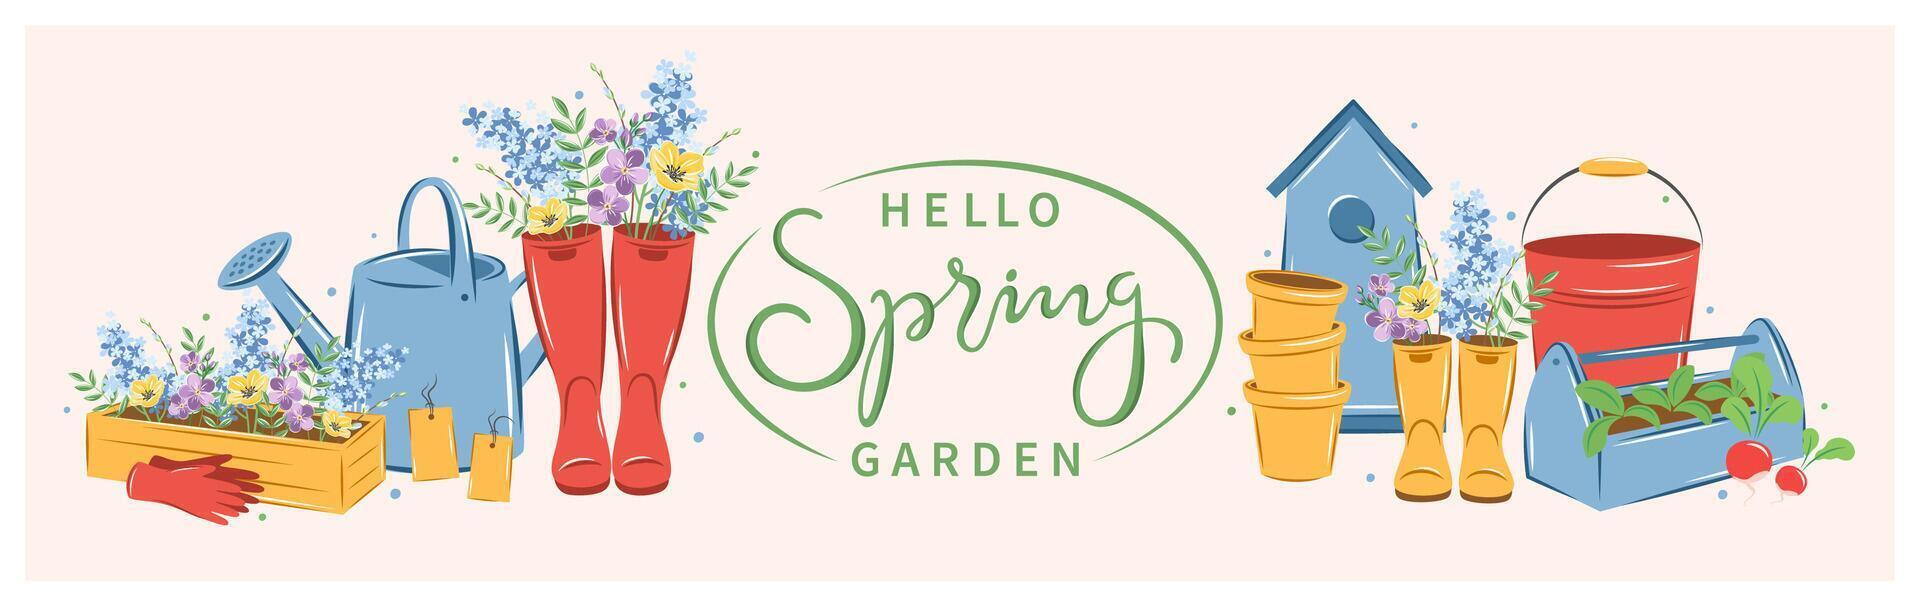 tuinieren, groeit planten, agrarisch hulpmiddelen. Hallo voorjaar tuin tekst. vector illustratie.